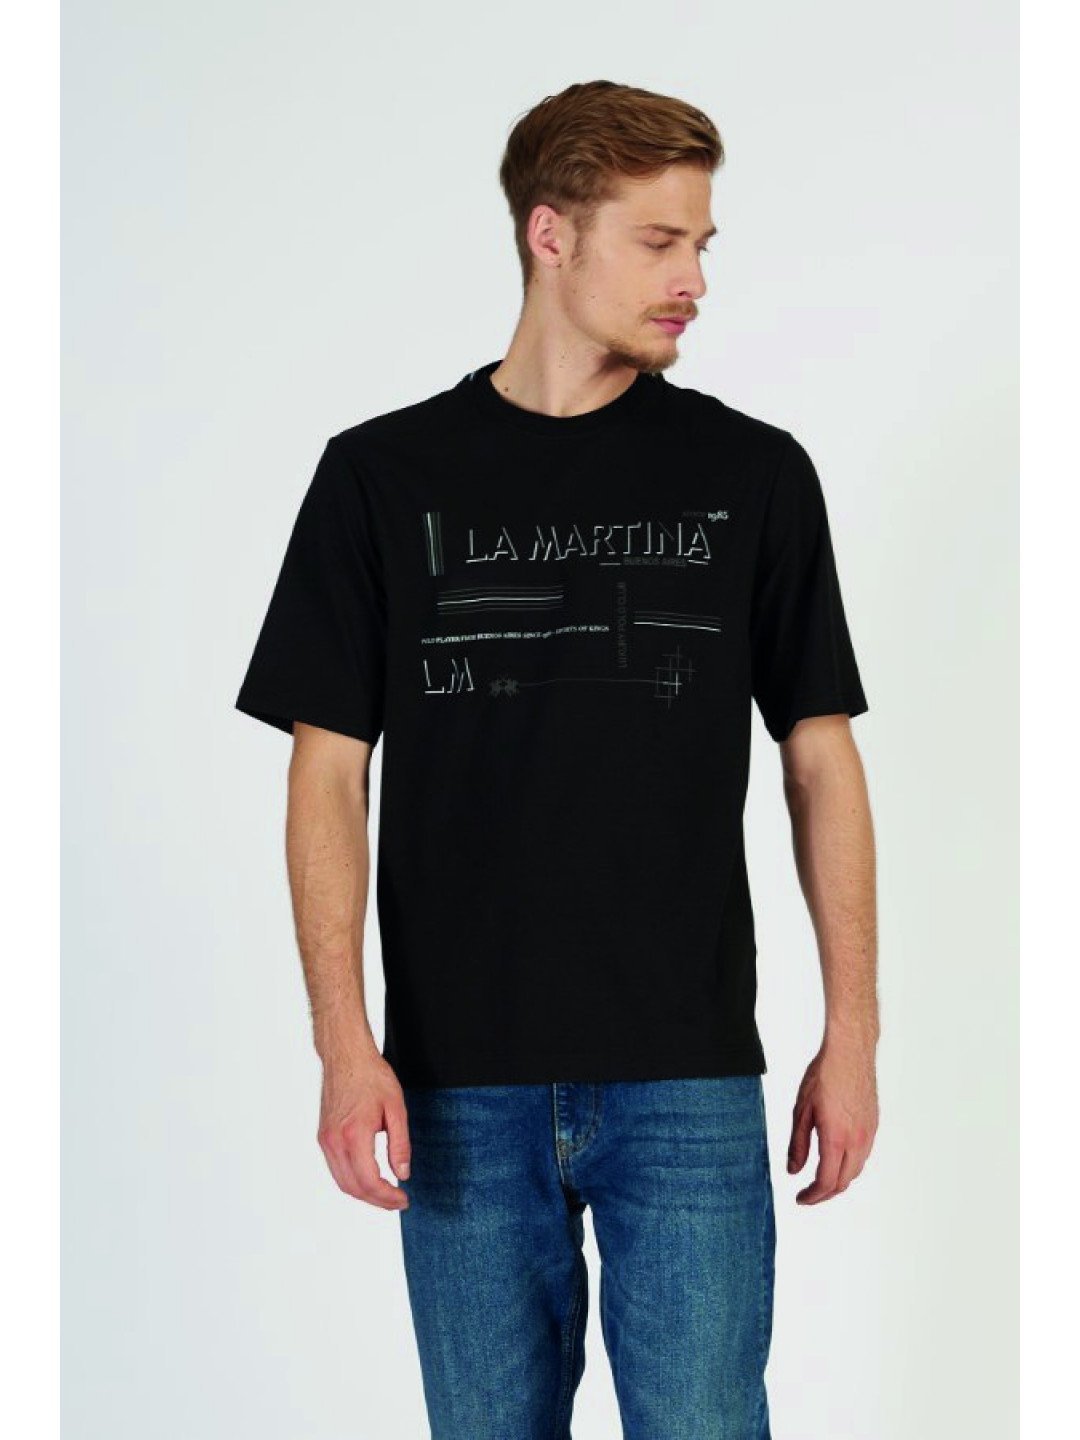 Tričko la martina man t-shirt s s jersey silky f černá m